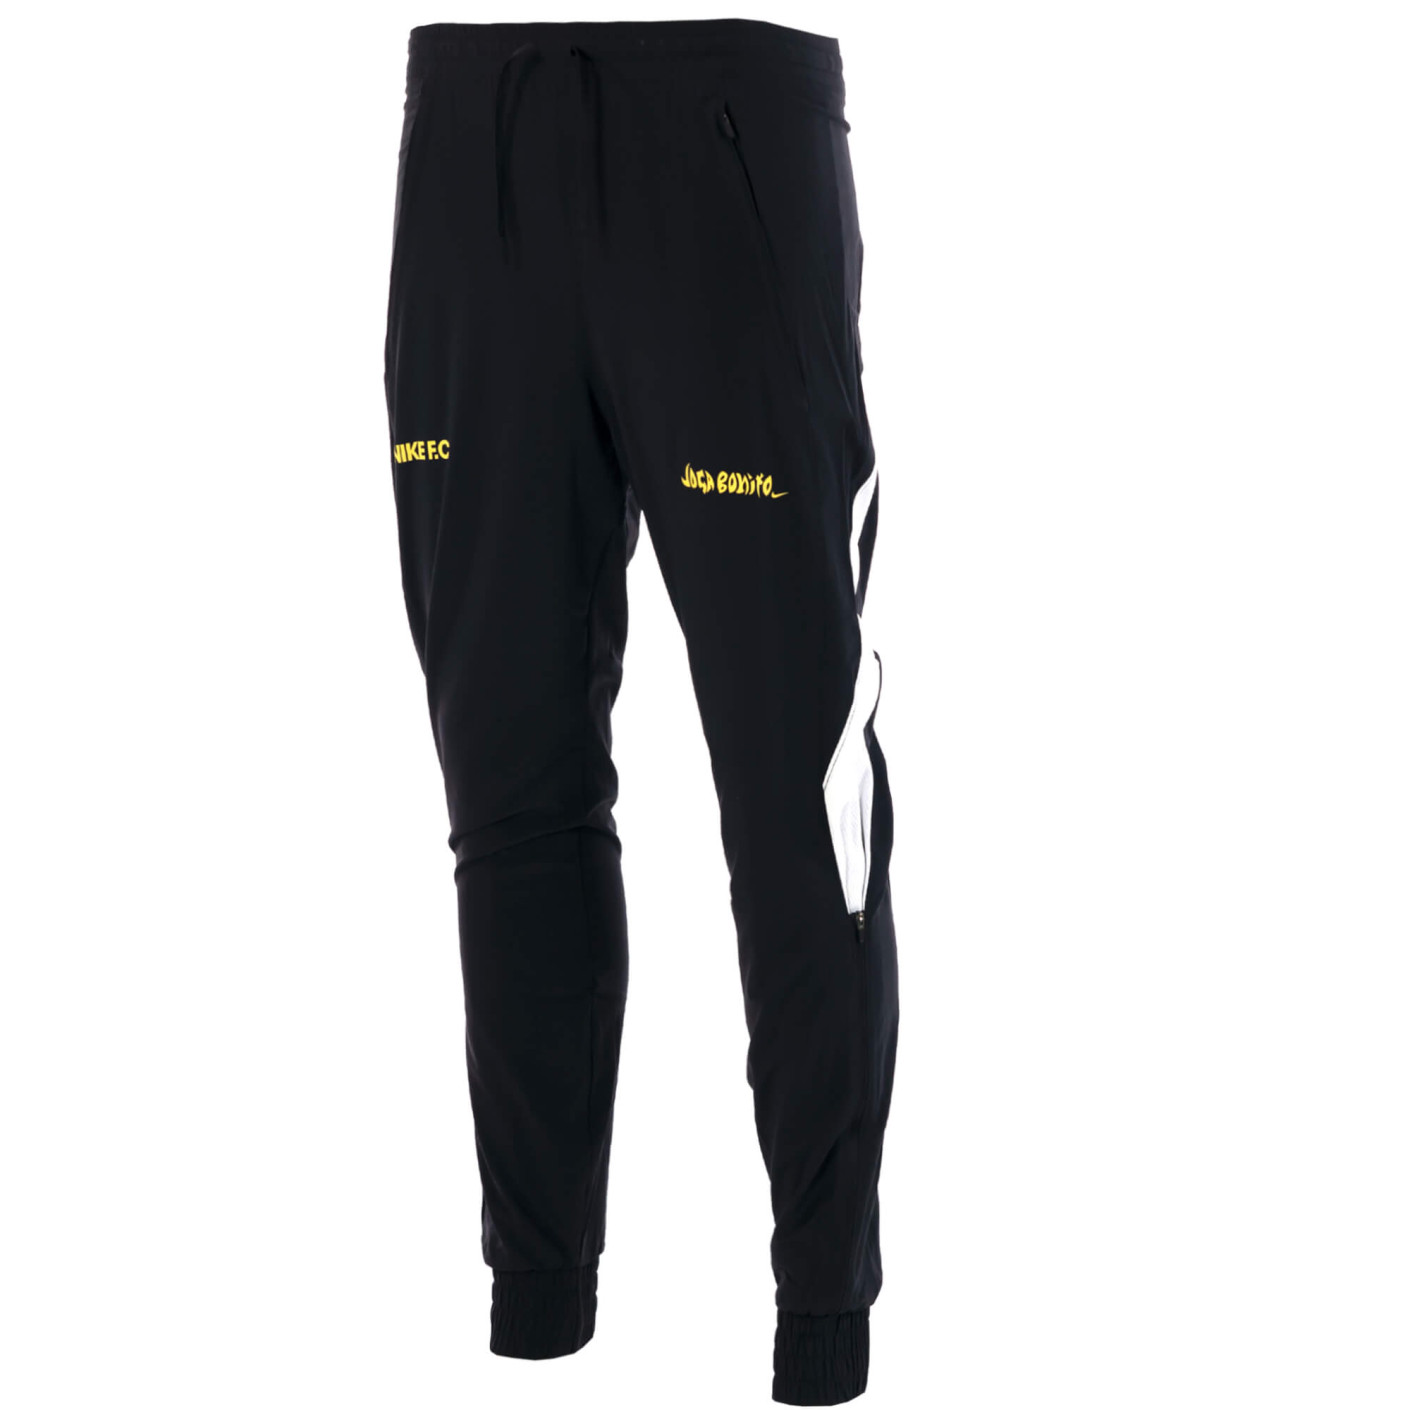 Pantalon d'entraînement Nike F.C. tissé noir blanc or